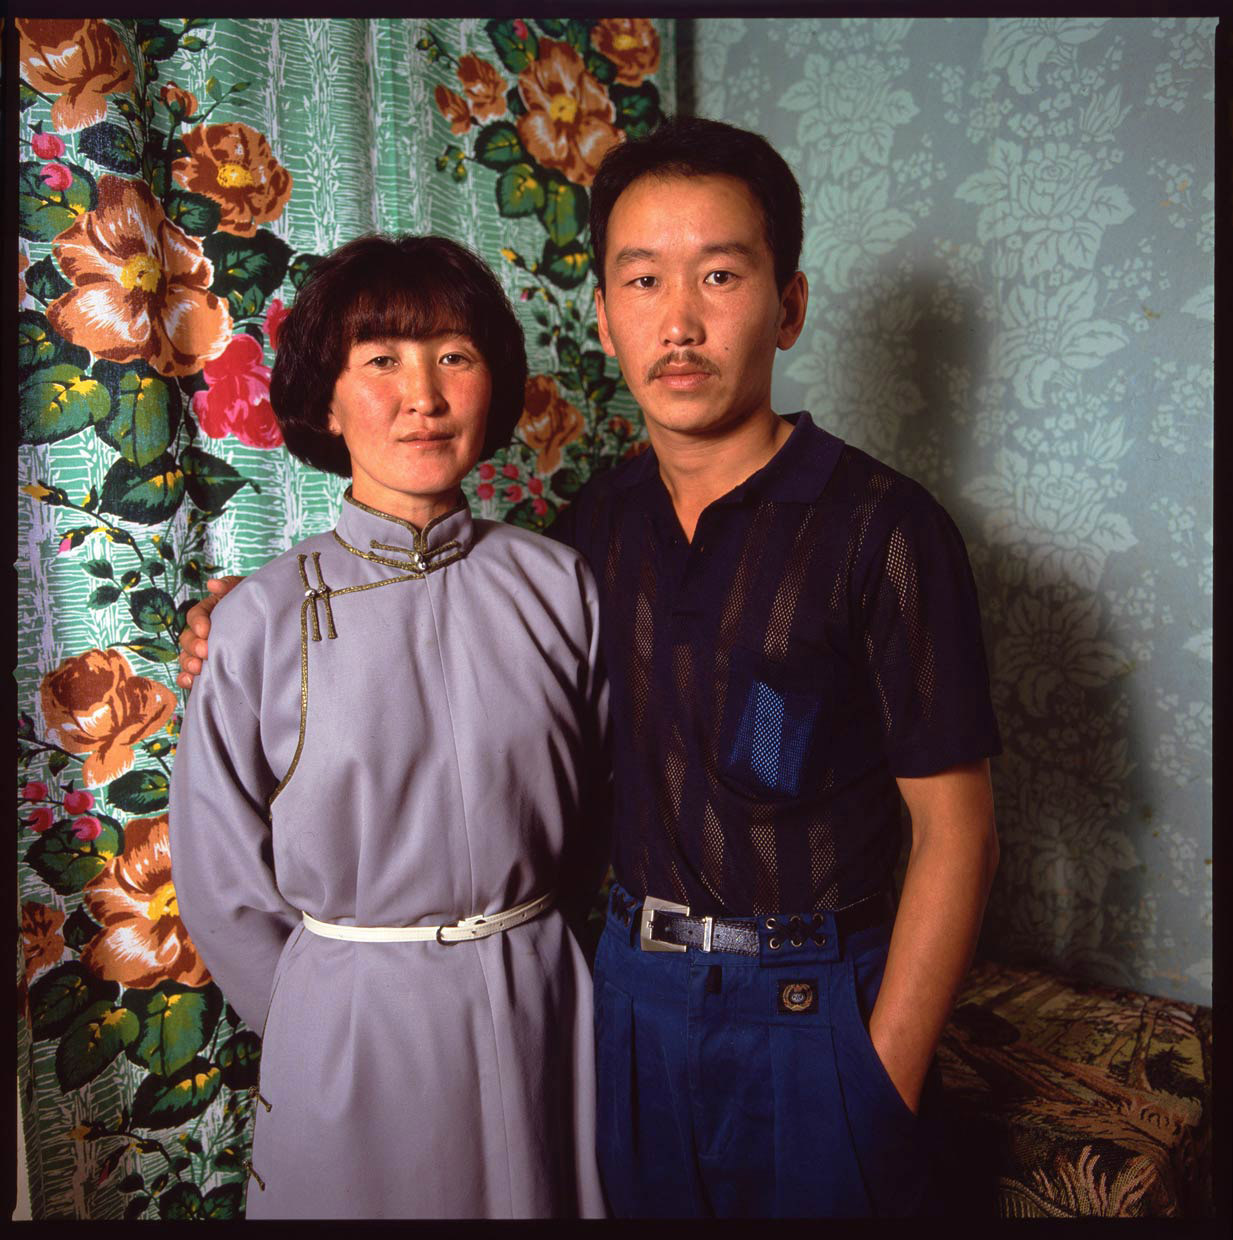 Dugemaa-sister-Naljirmaa__husband-Batbold_Ulaanbaatar